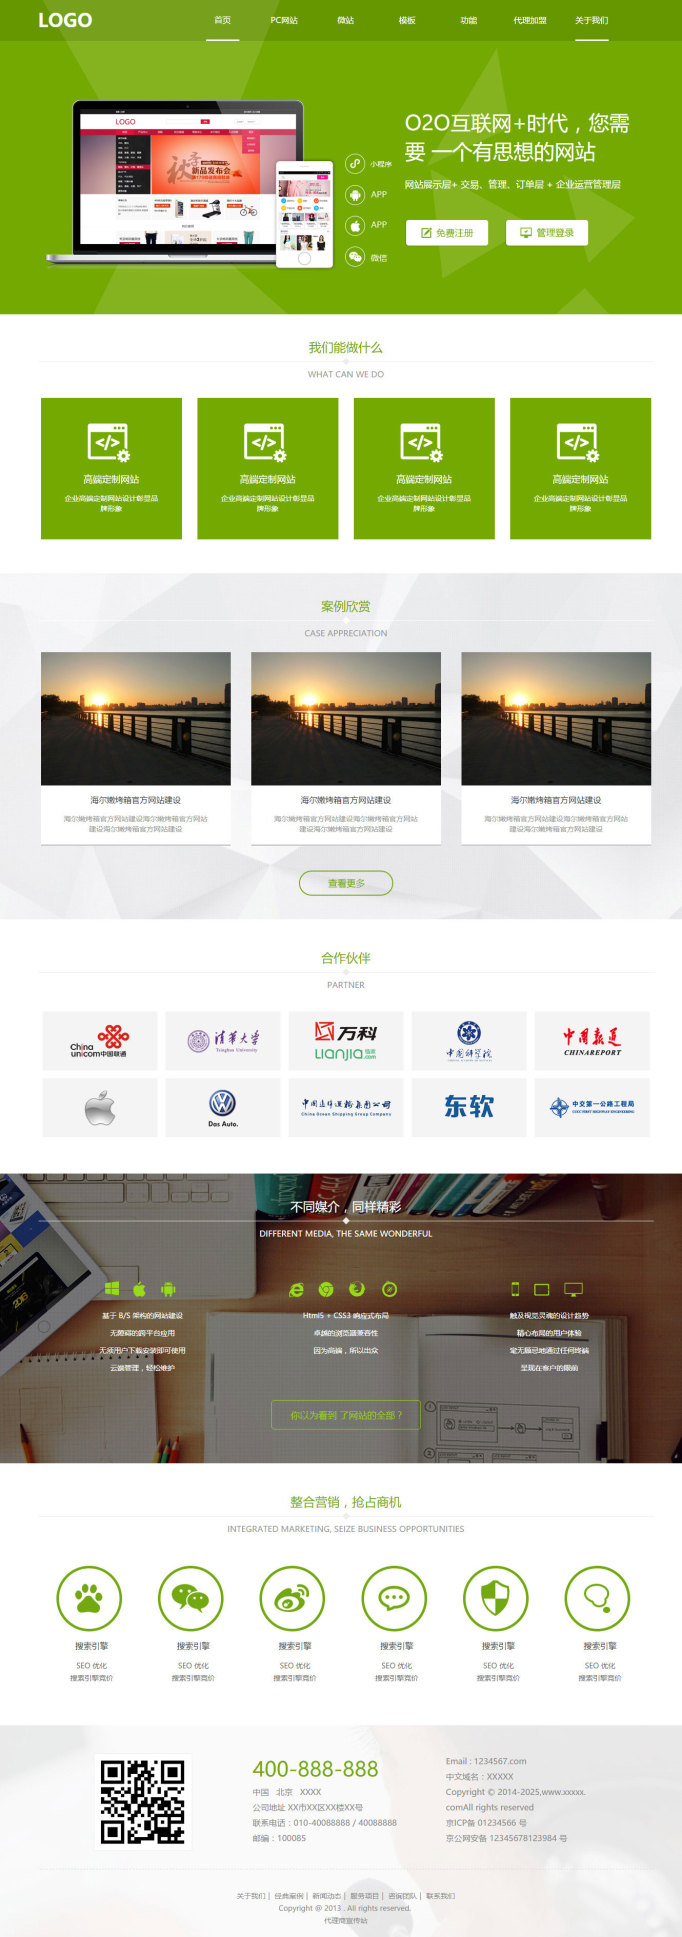 重慶網站建設